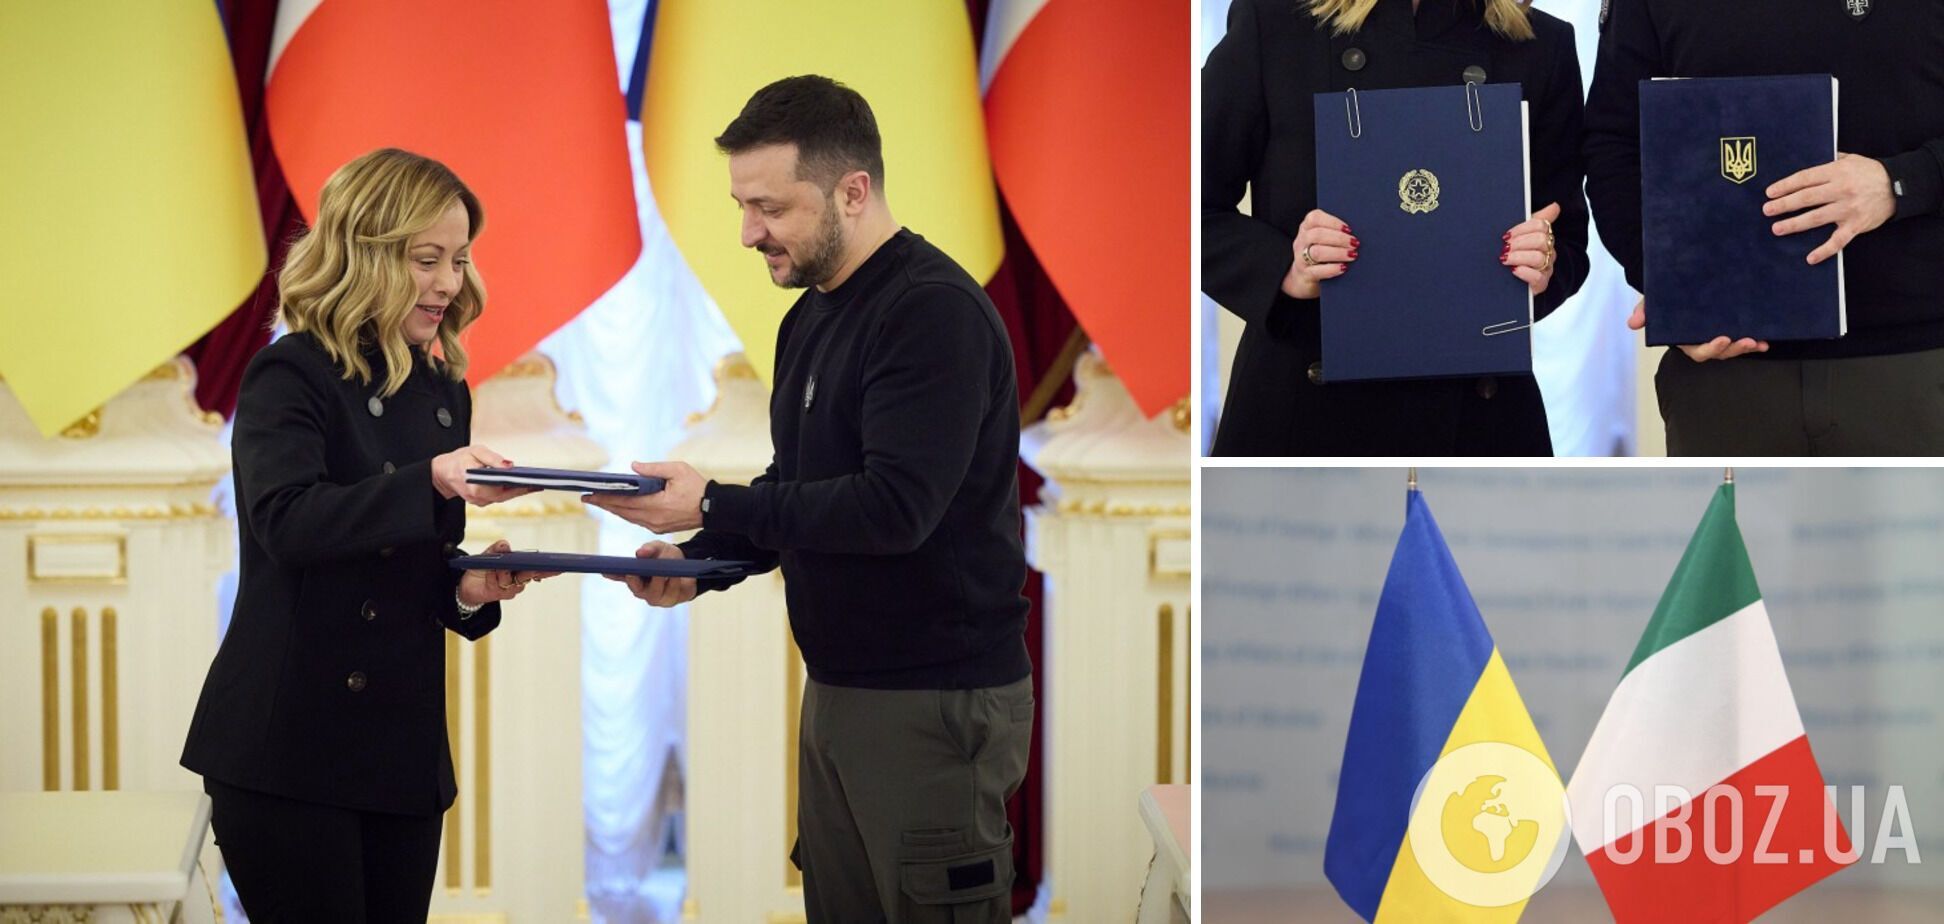 Зеленский и Мелони подписали соглашение о безопасности между Украиной и Италией. Фото, видео и текст